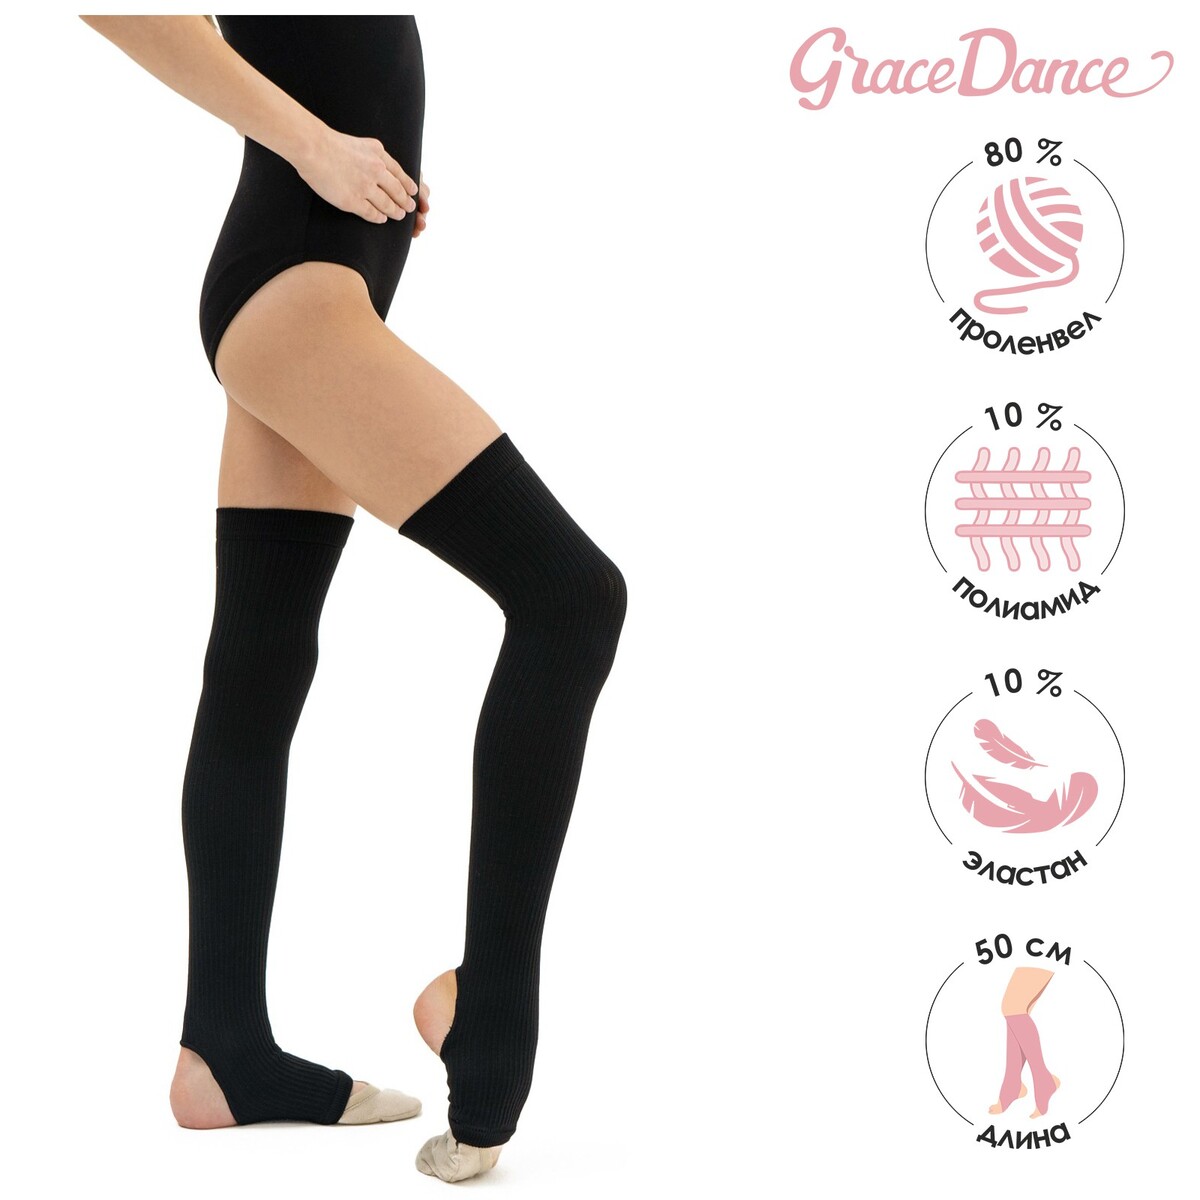 Гетры для танцев grace dance №4, длина 50 см, цвет черный гетры для танцев grace dance 5 длина 40 см бирюзовый